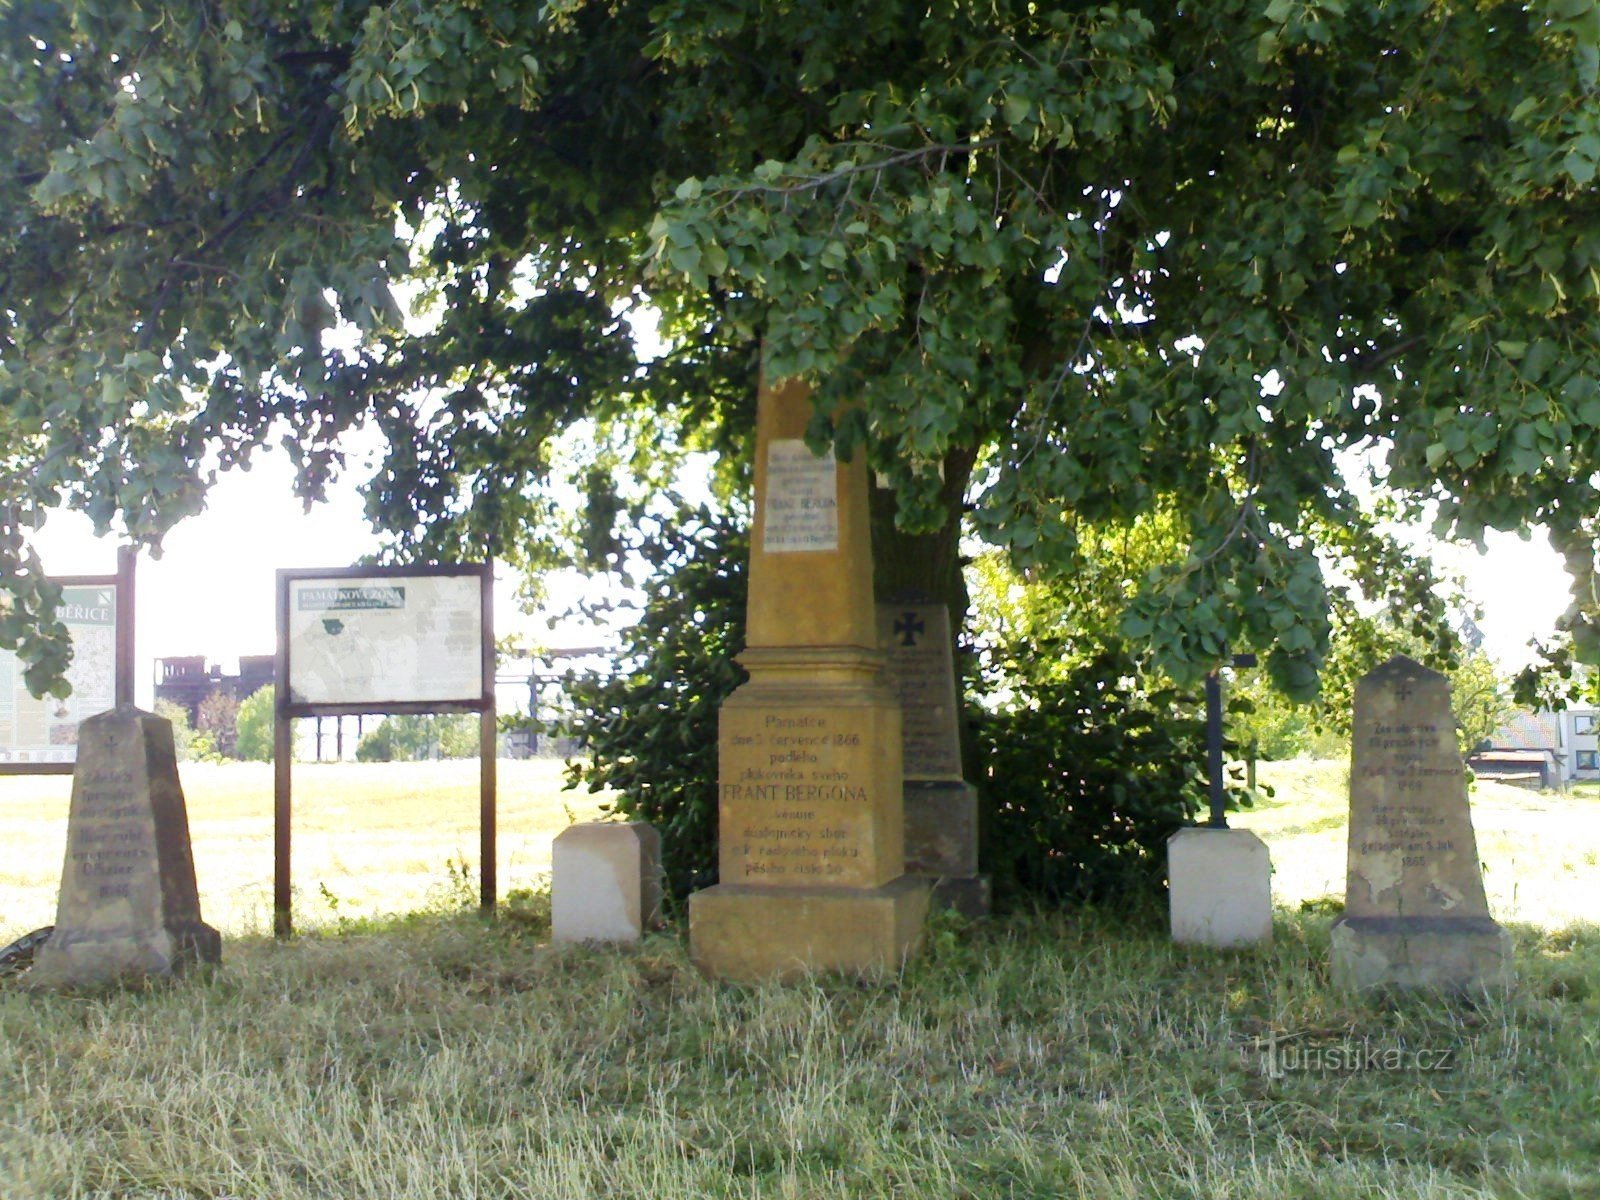 Rózběřice - 1866 年战役的纪念碑